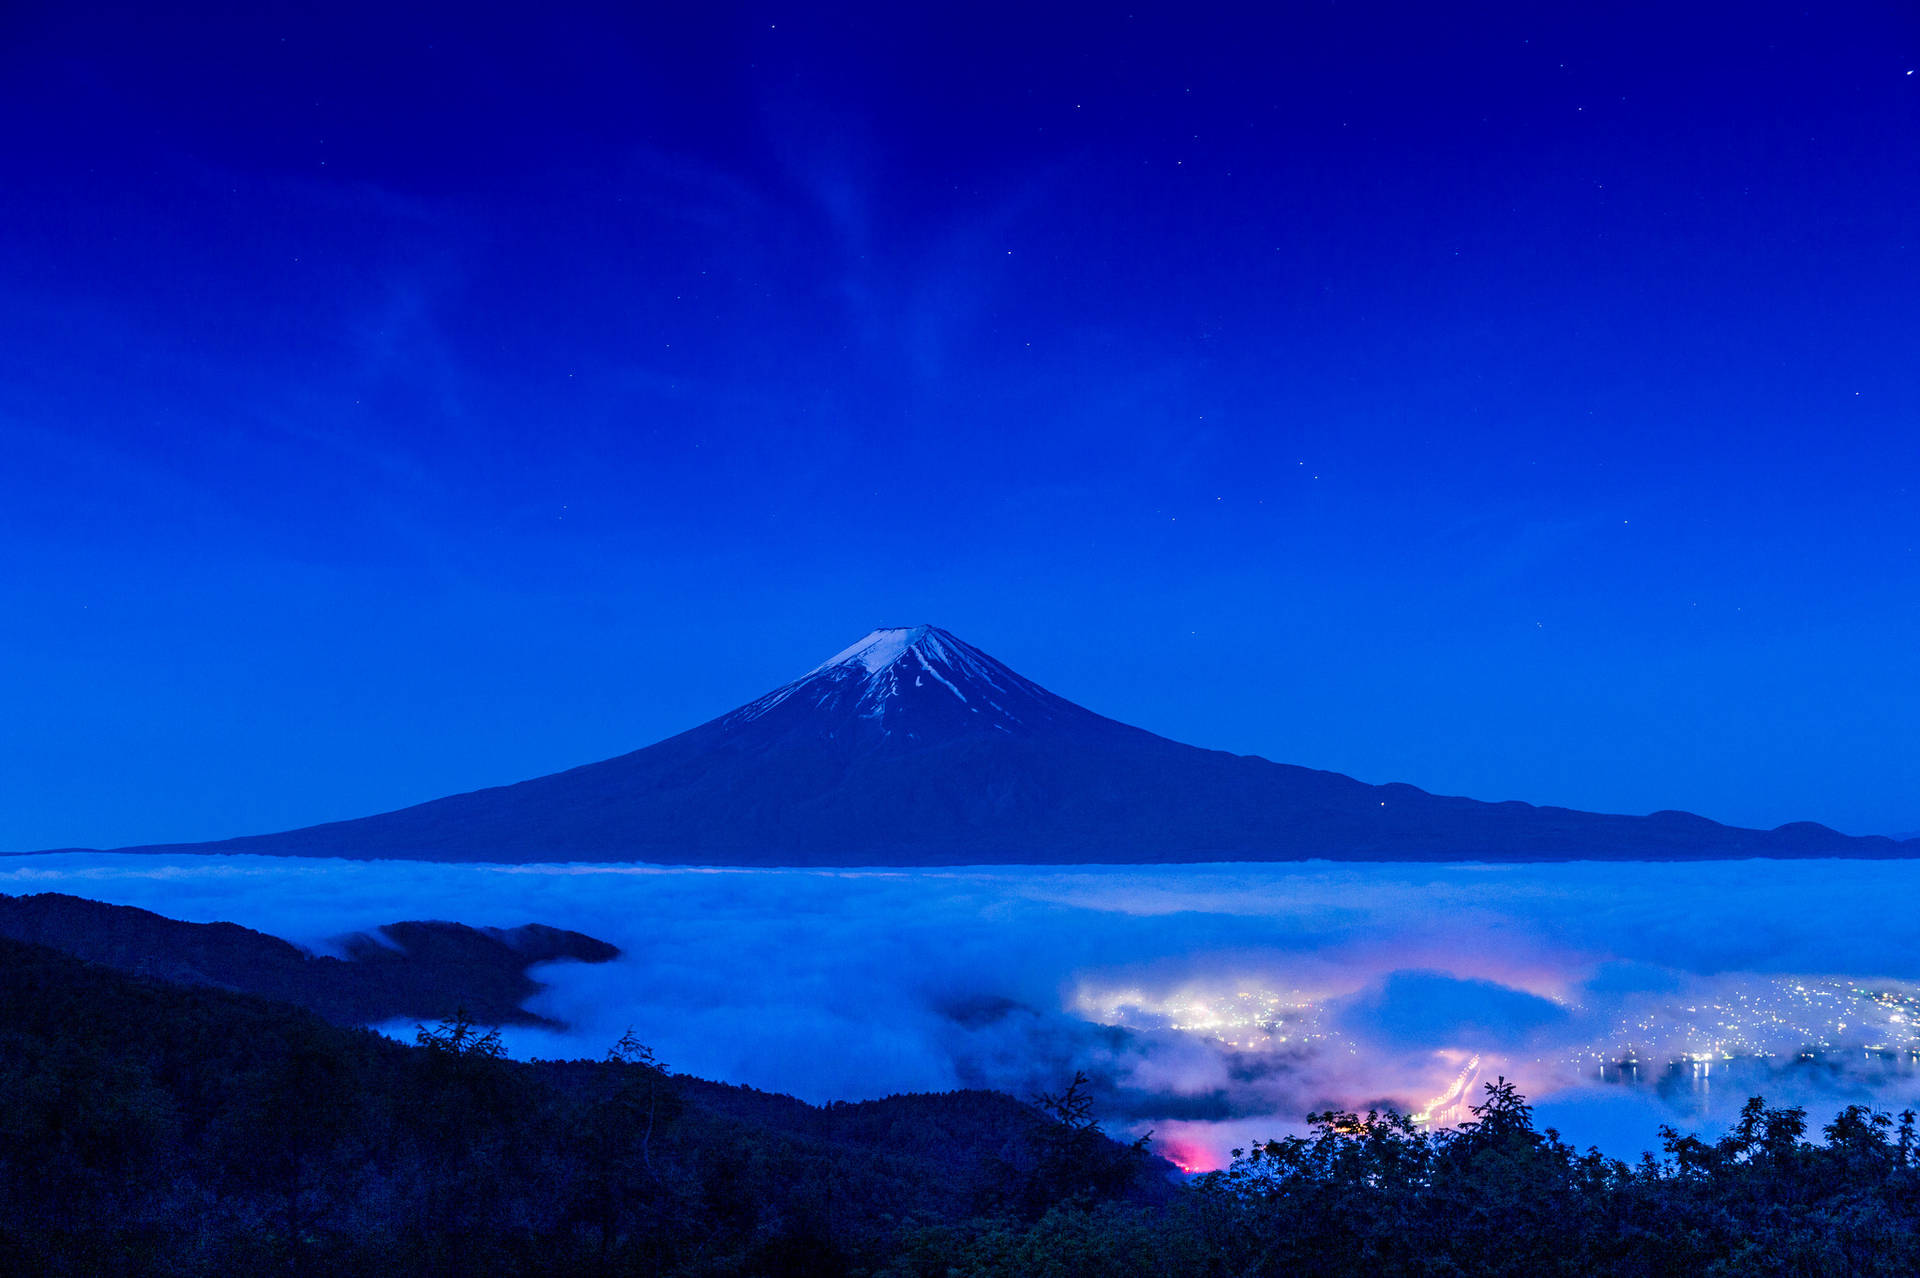 Mørkeblå Mount Fuji mod en stjernestrøms natte himmel. Wallpaper